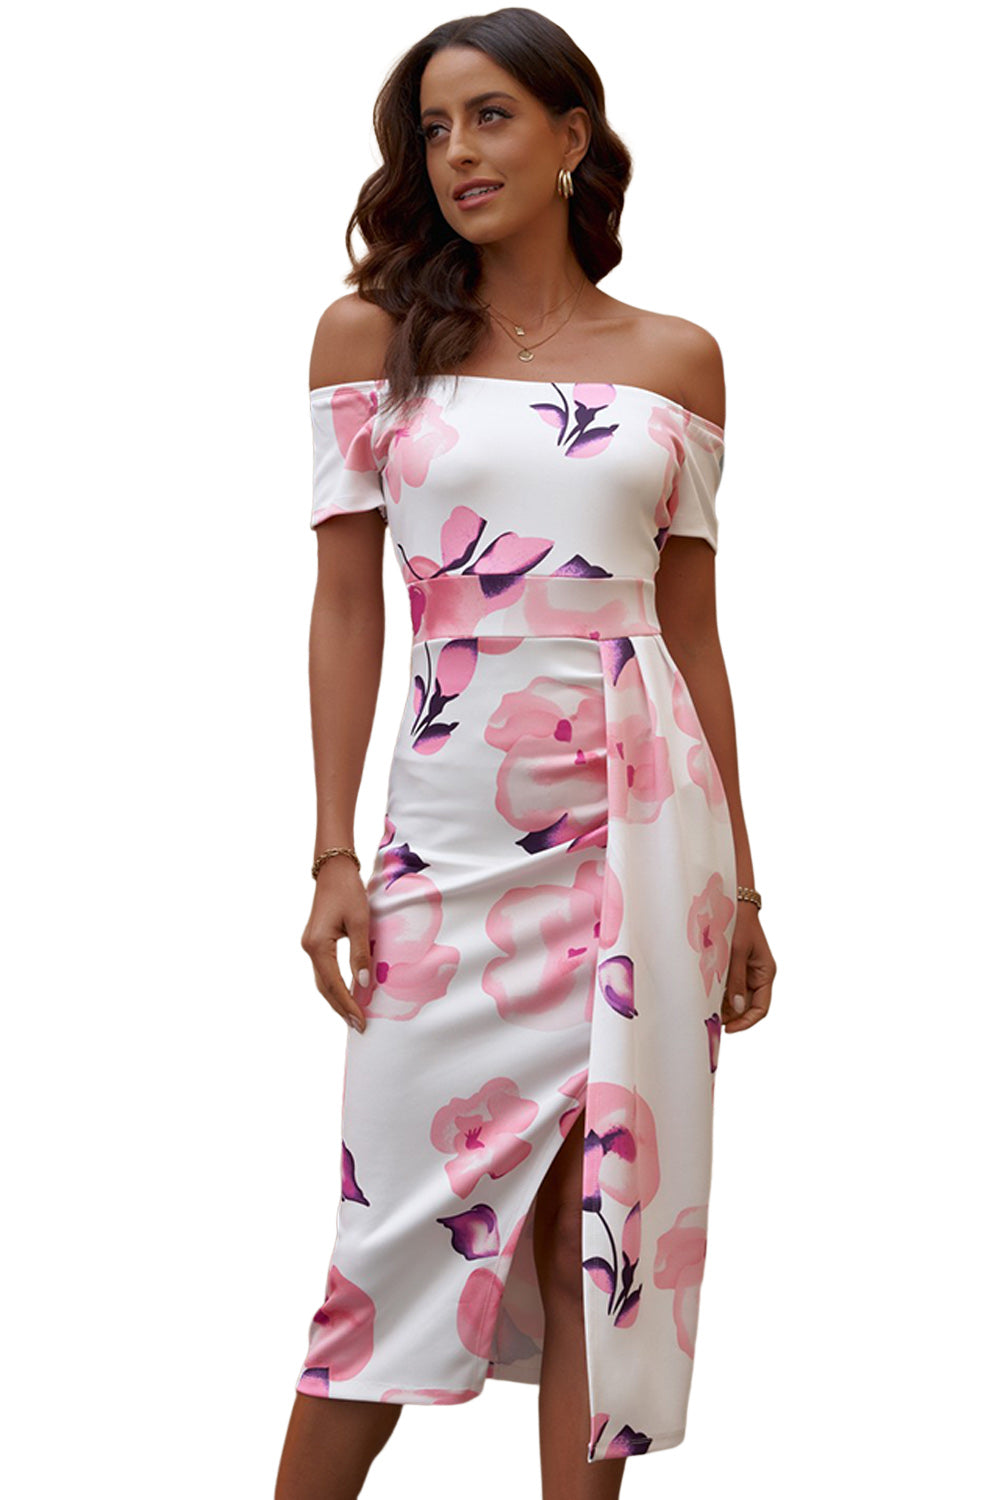 Rožnata midi obleka z razporkom na ramenih in cvetličnim potiskom